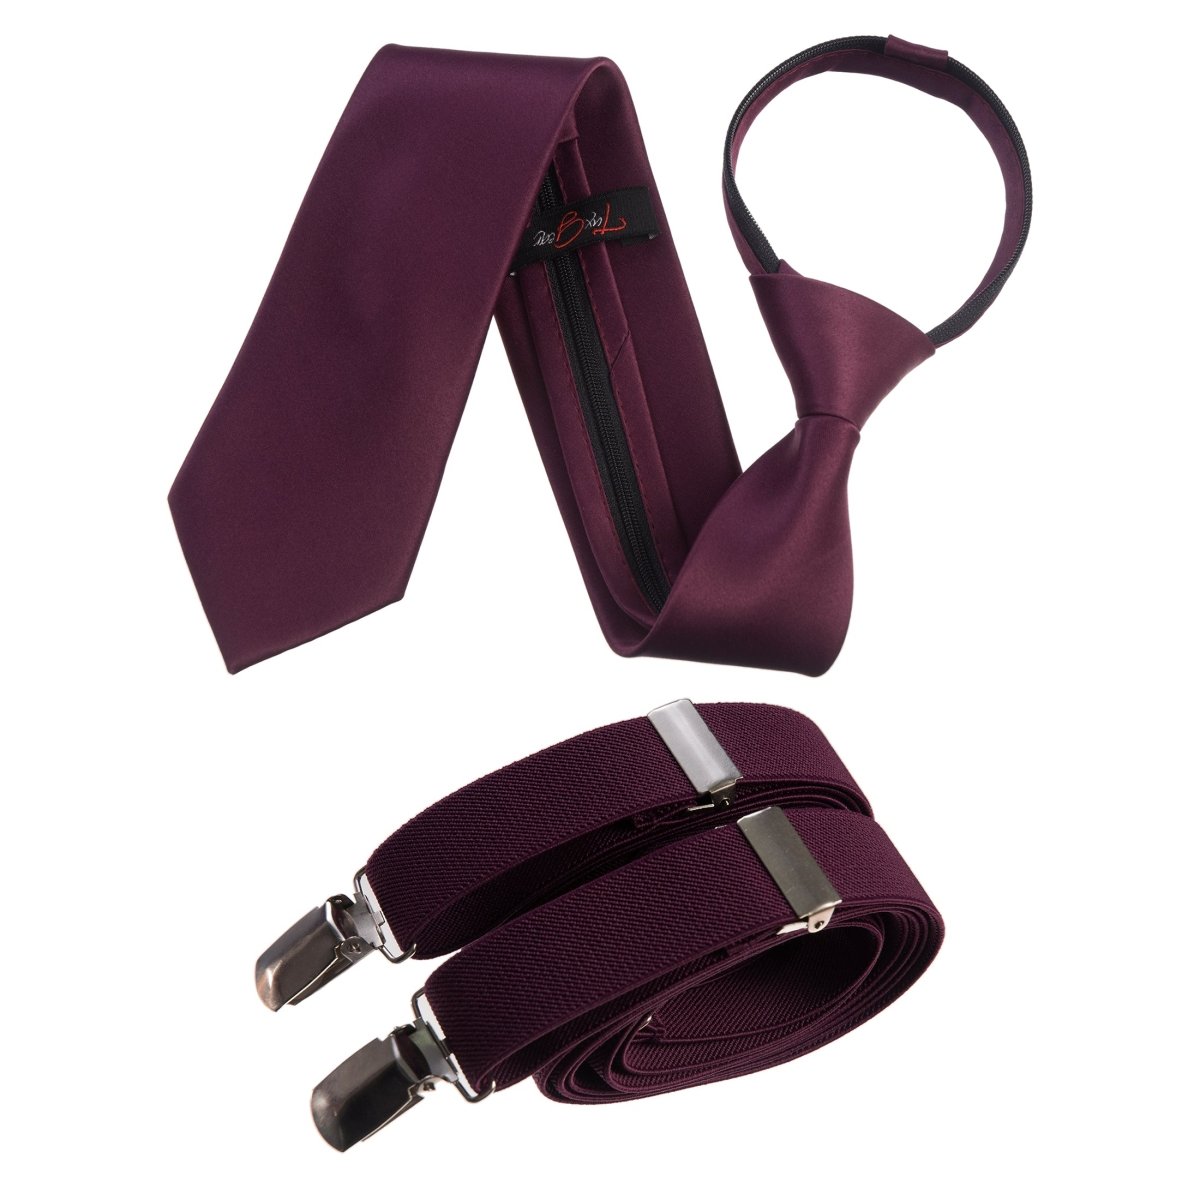 Tuxgear Neck Tie and Adjustable Stretch Suspender Set